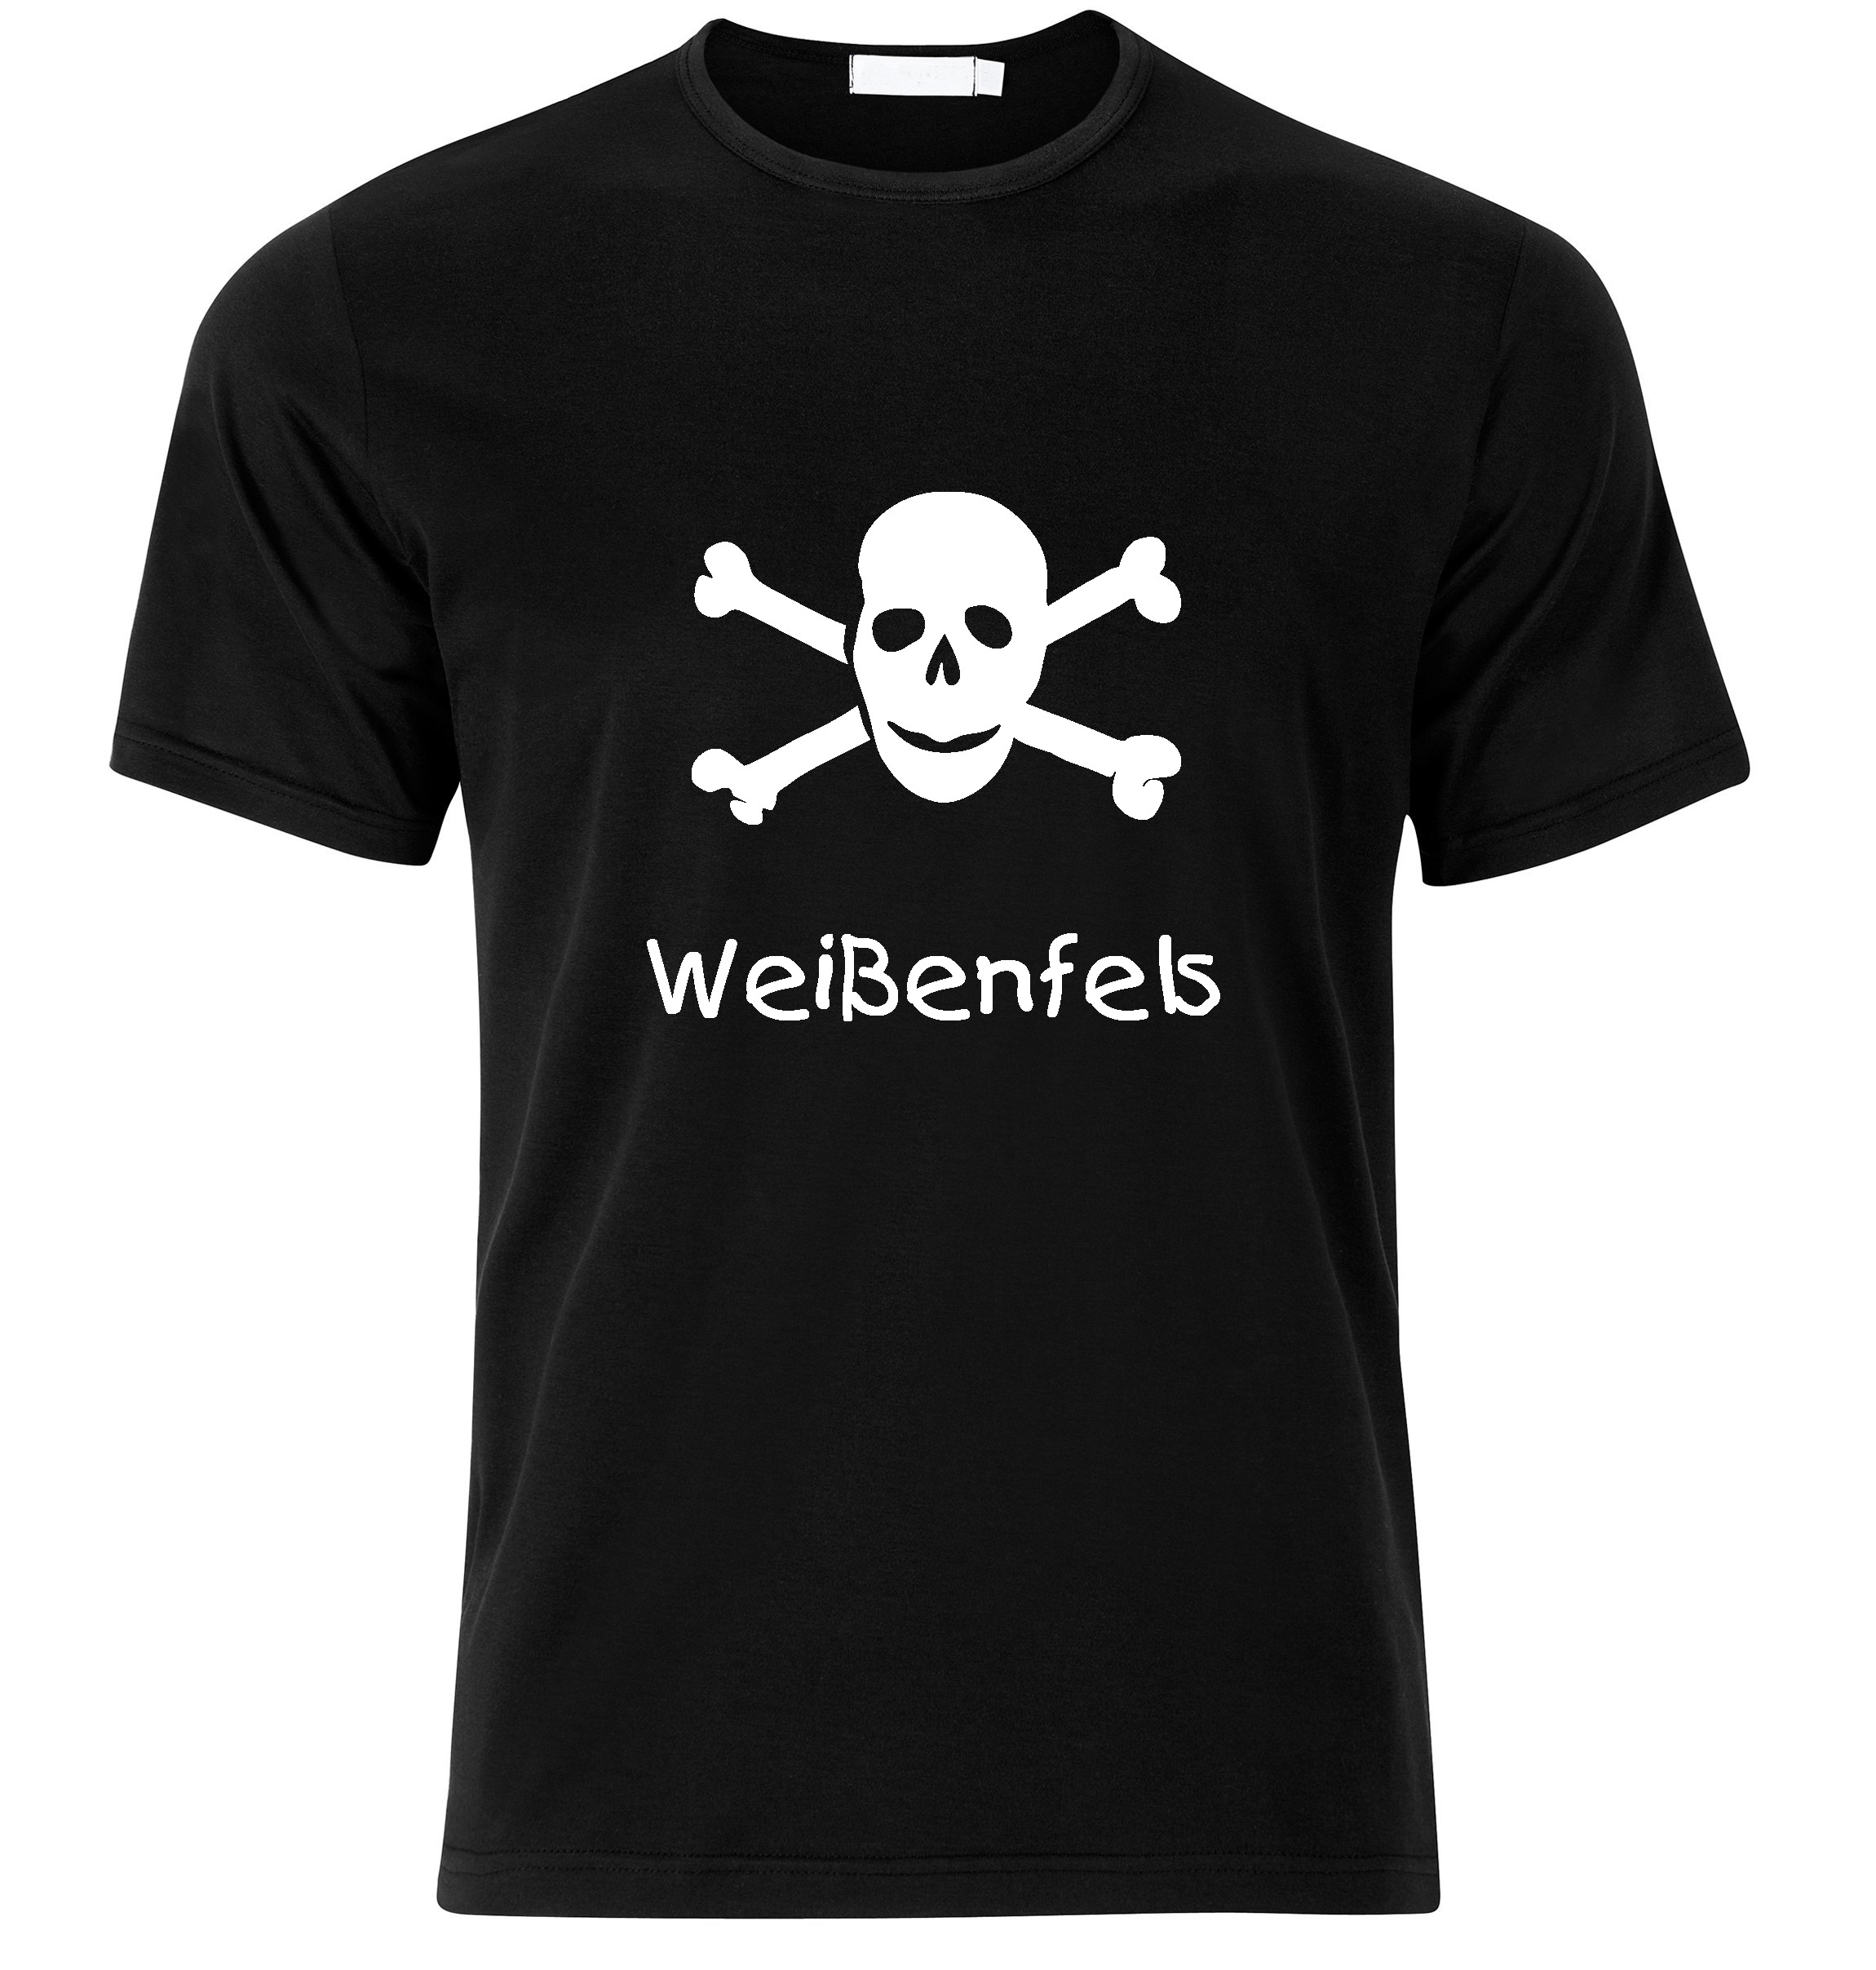 T-Shirt Weißenfels Jolly Roger, Totenkopf